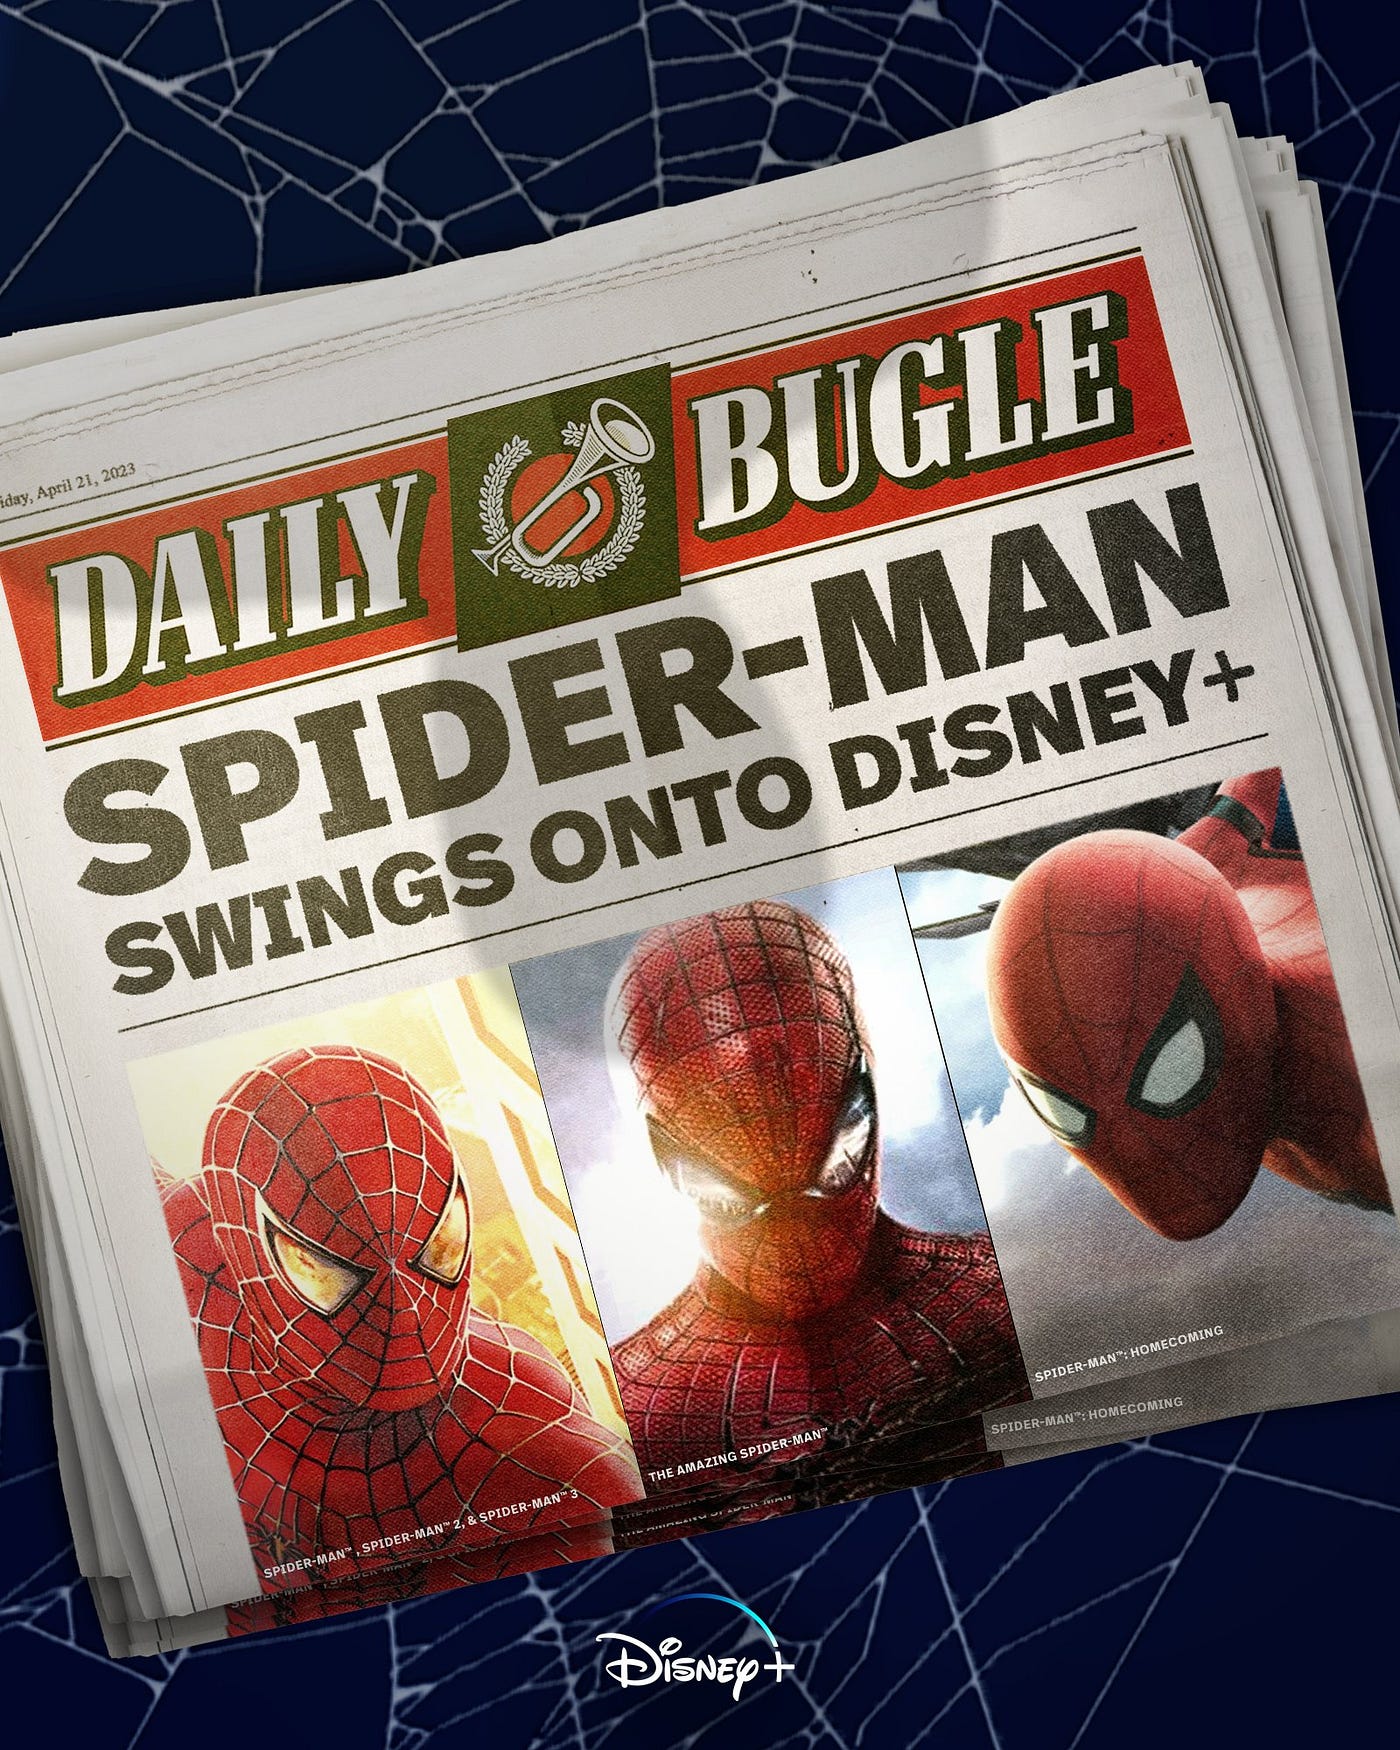 When Will Amazing Spider-Man 2 Stream on Disney+?